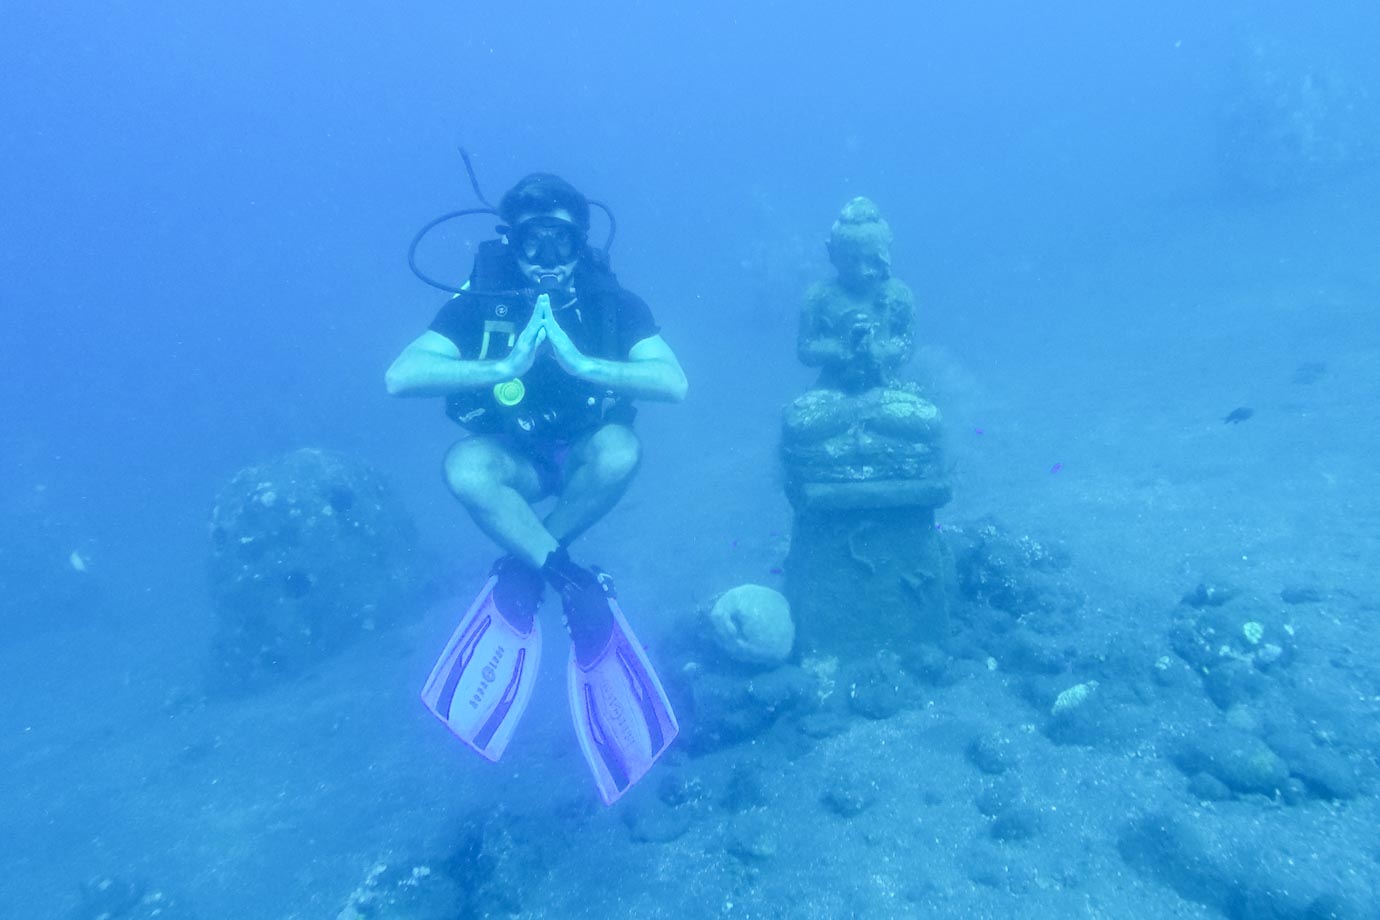 Diving in Bali